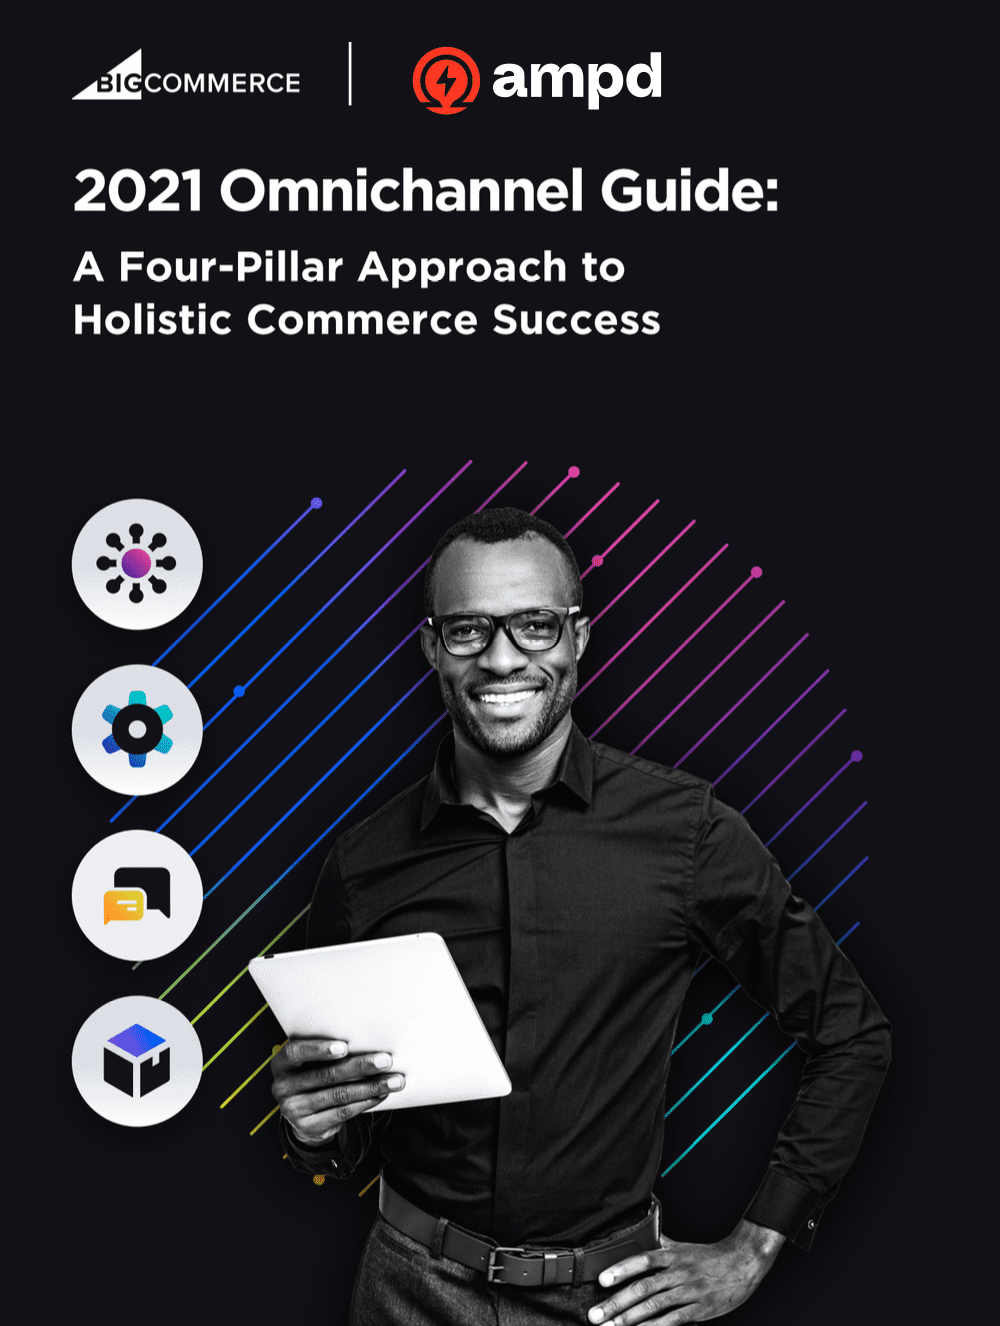 BigCommerce Ampd Omnichannel Guide 2021 Image